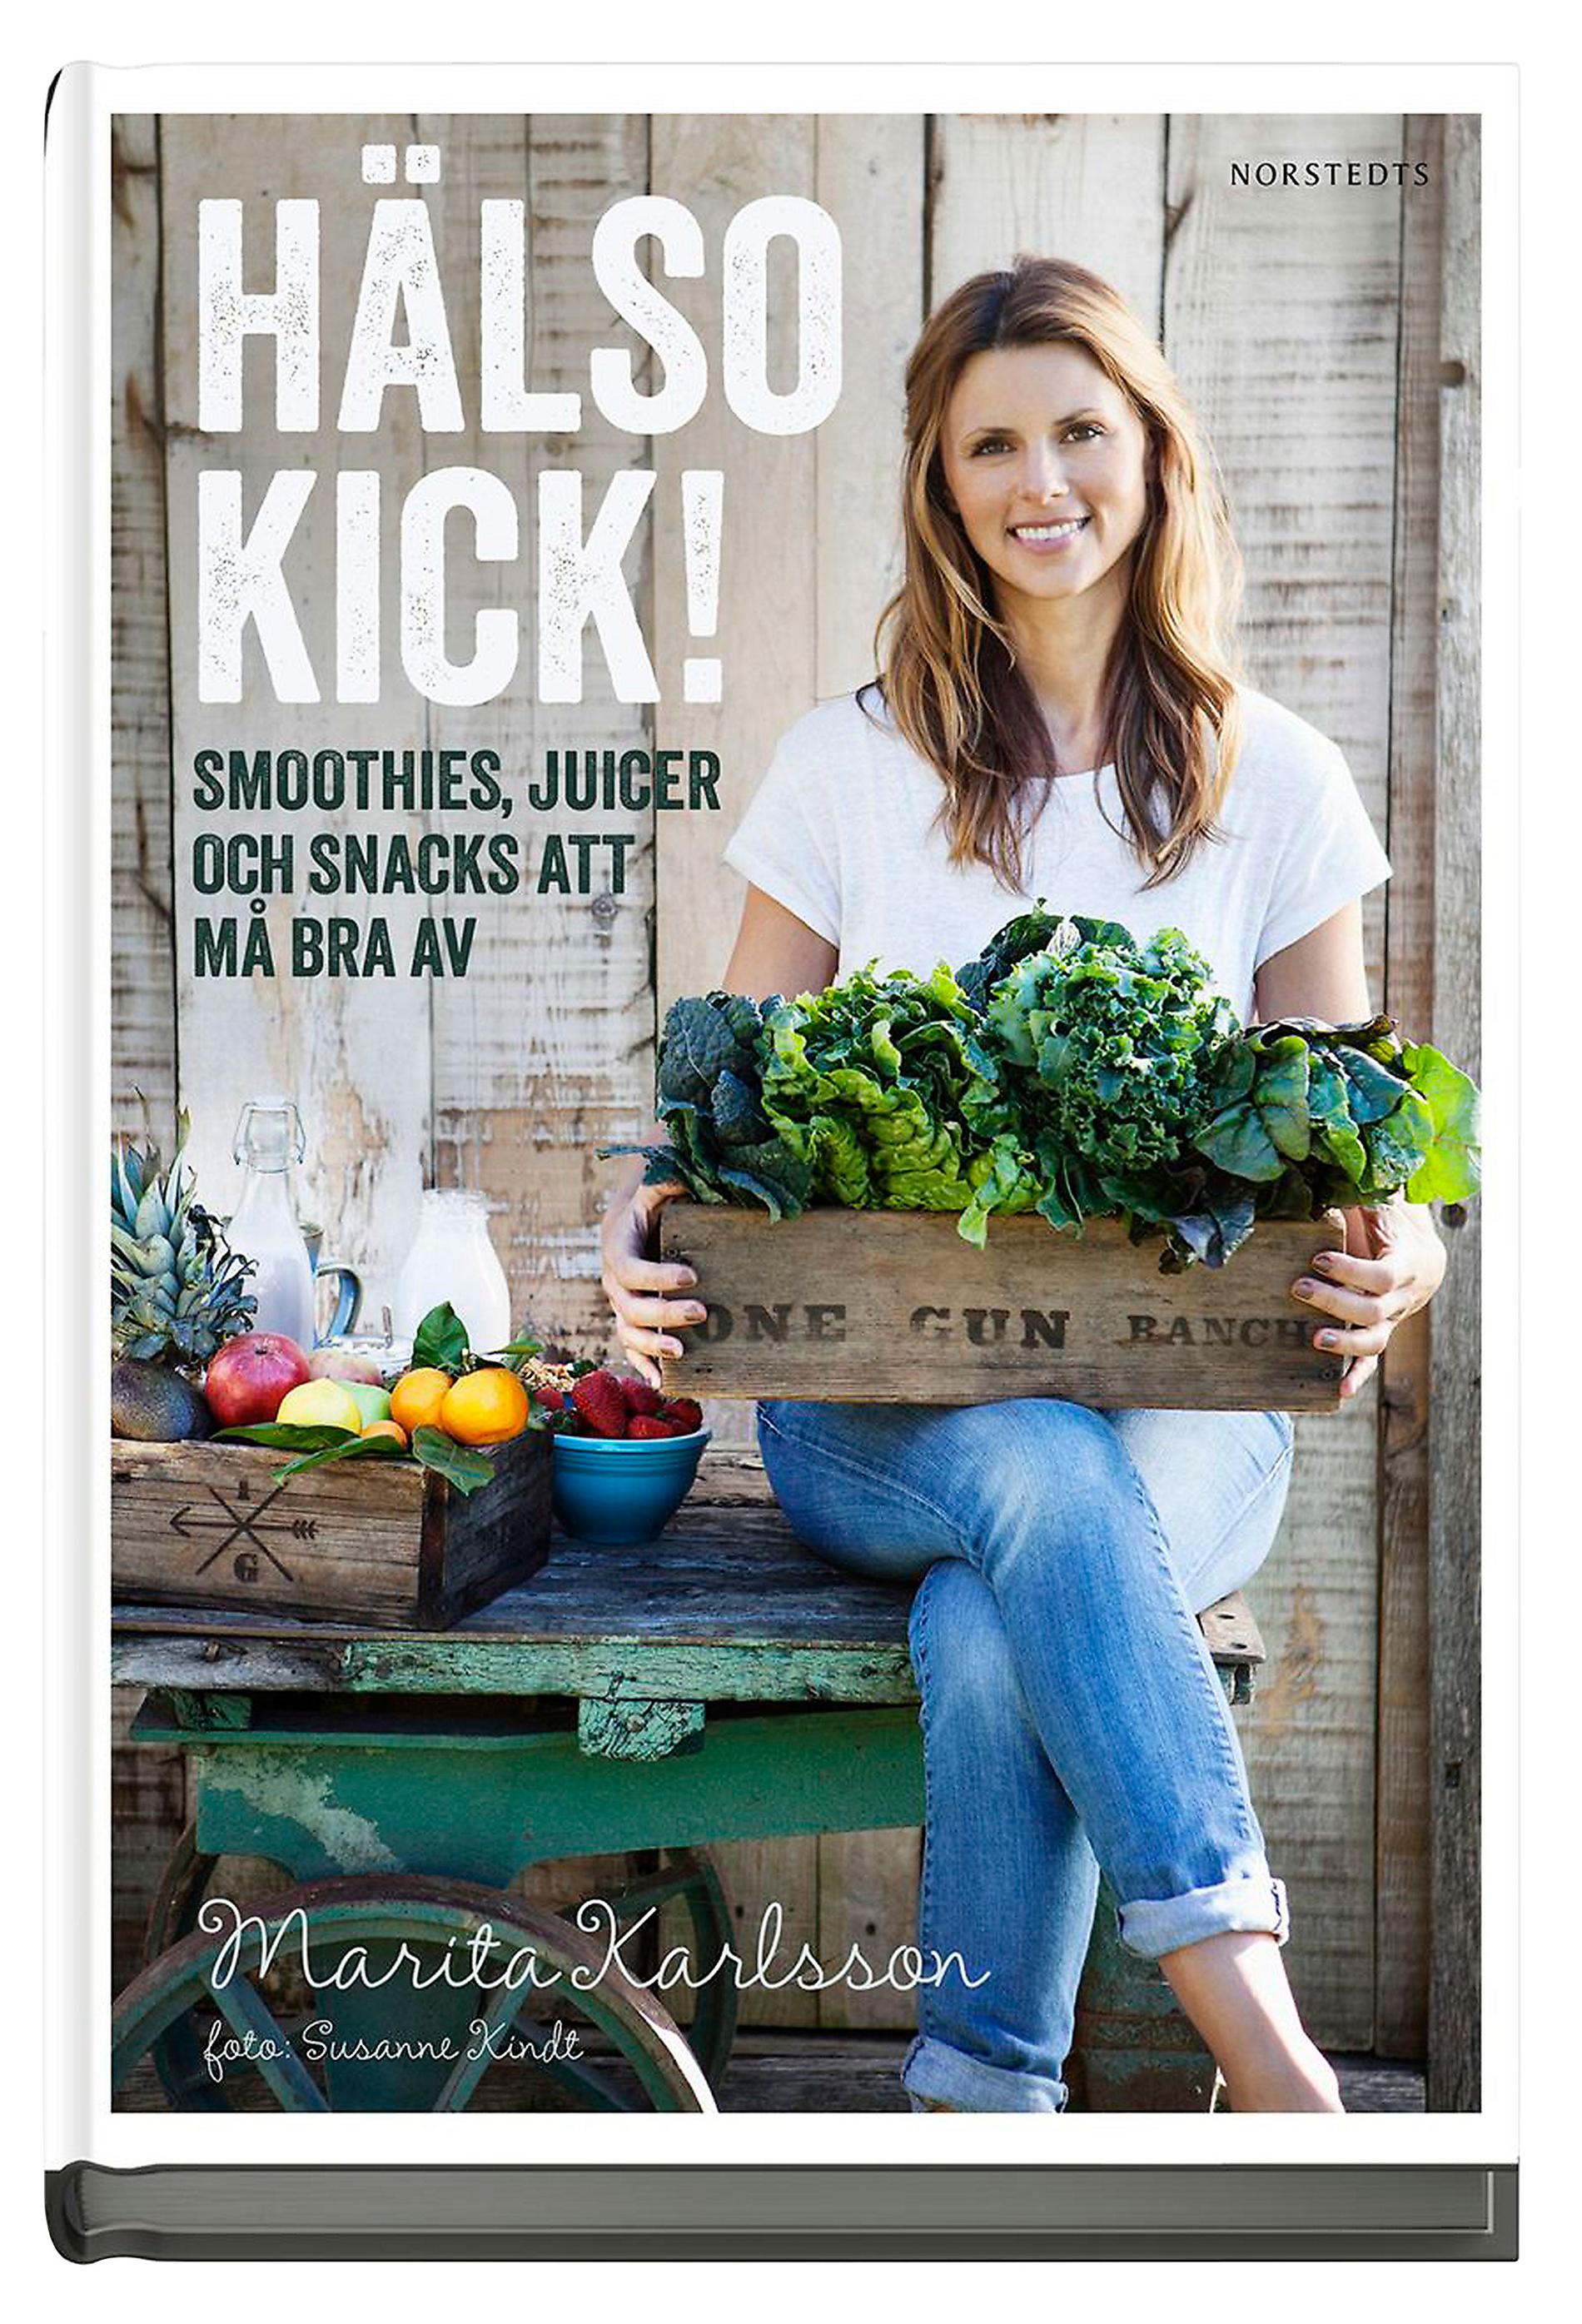 Boktips! Marita Karlsons nya bok ”Hälsokick” (168 kronor, Bokus.com) är full med goda och rena recept.